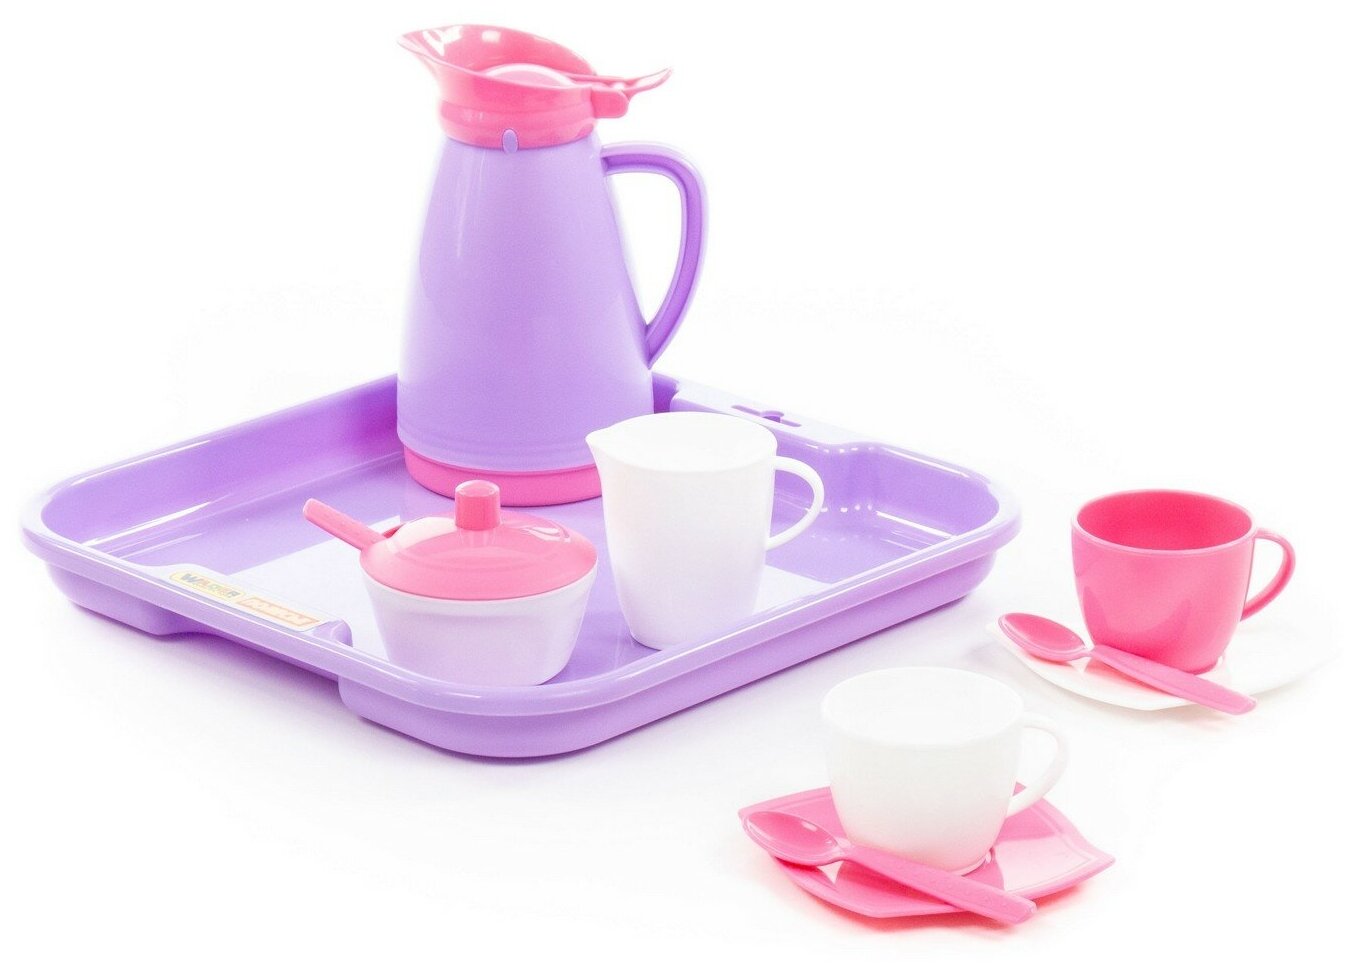 Набор посуды Полесье "Алиса" с подносом на 2 персоны 40589 белый/розовый/фиолетовый